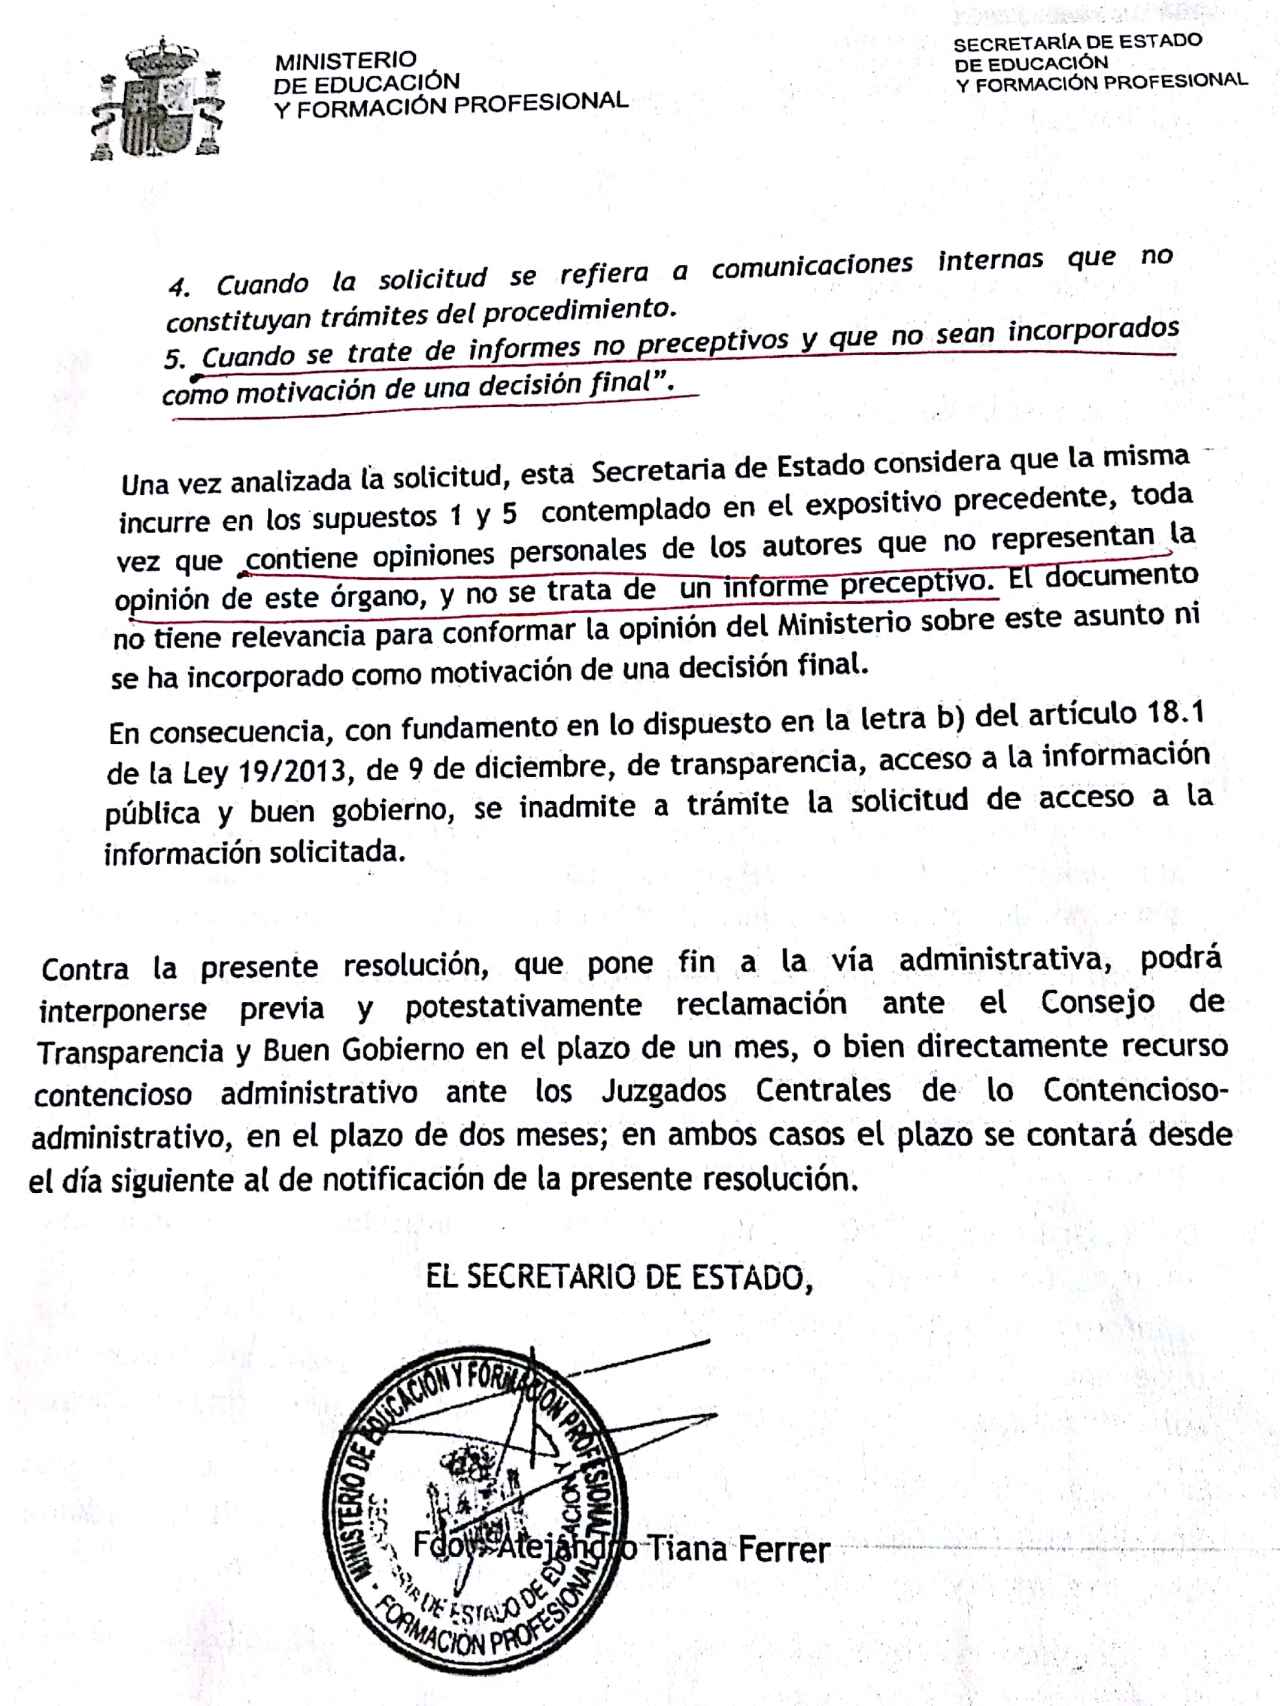 Inadmisión de la solicitud de Isaac Ibáñez al Ministerio de Educación.